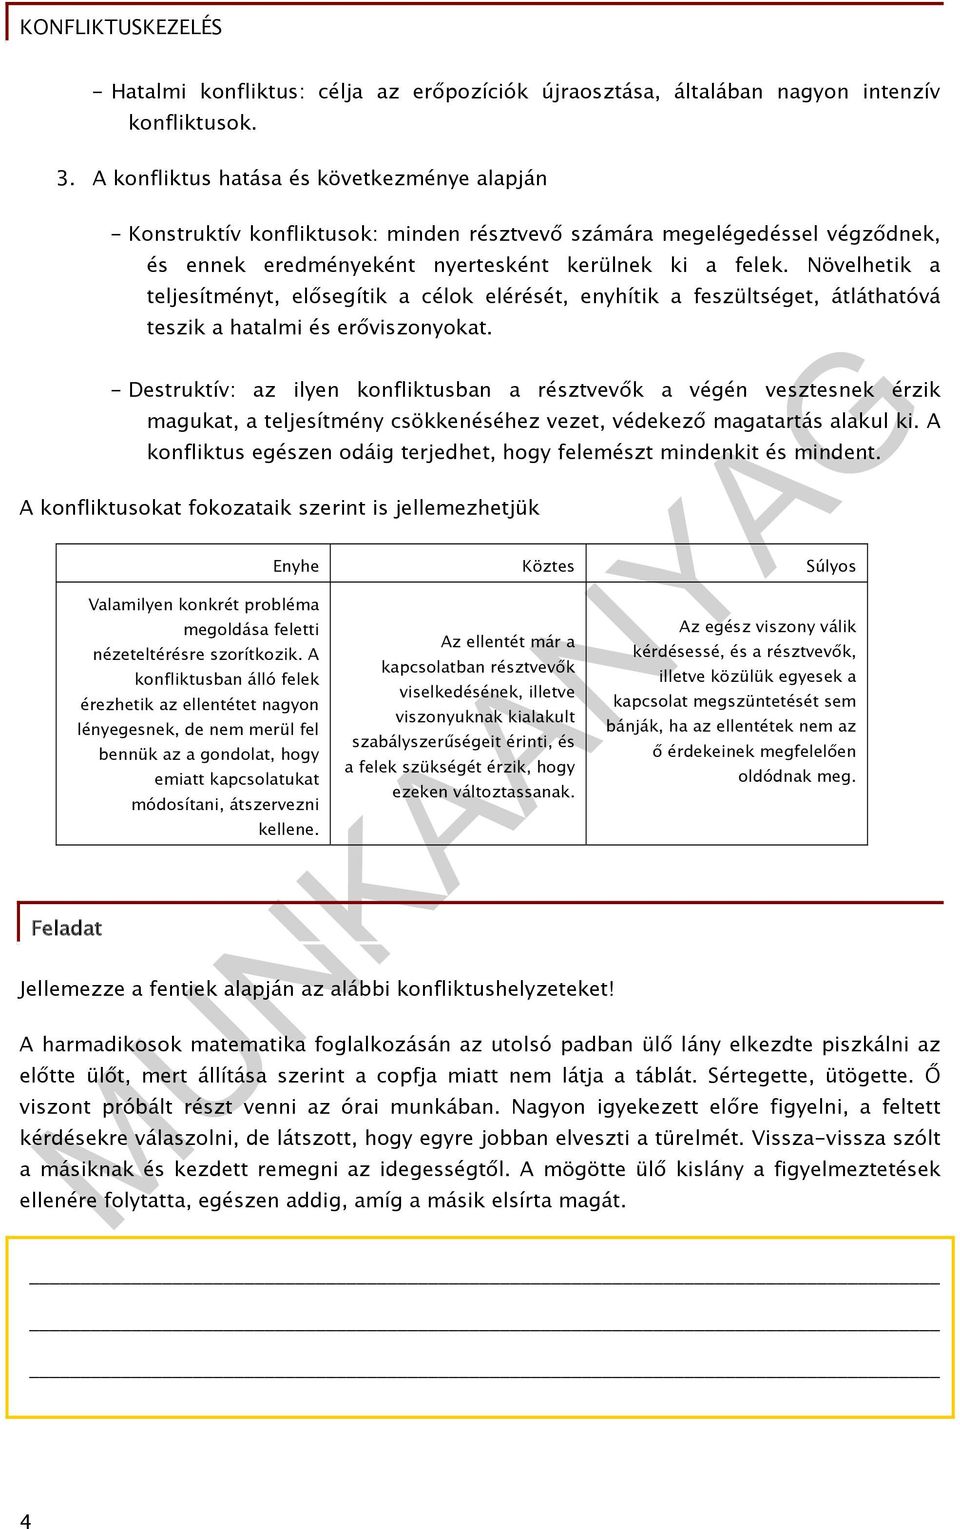 Varga Olga. Konfliktuskezelés. A követelménymodul megnevezése: Általános  pedagógiai asszisztensi feladatok - PDF Ingyenes letöltés